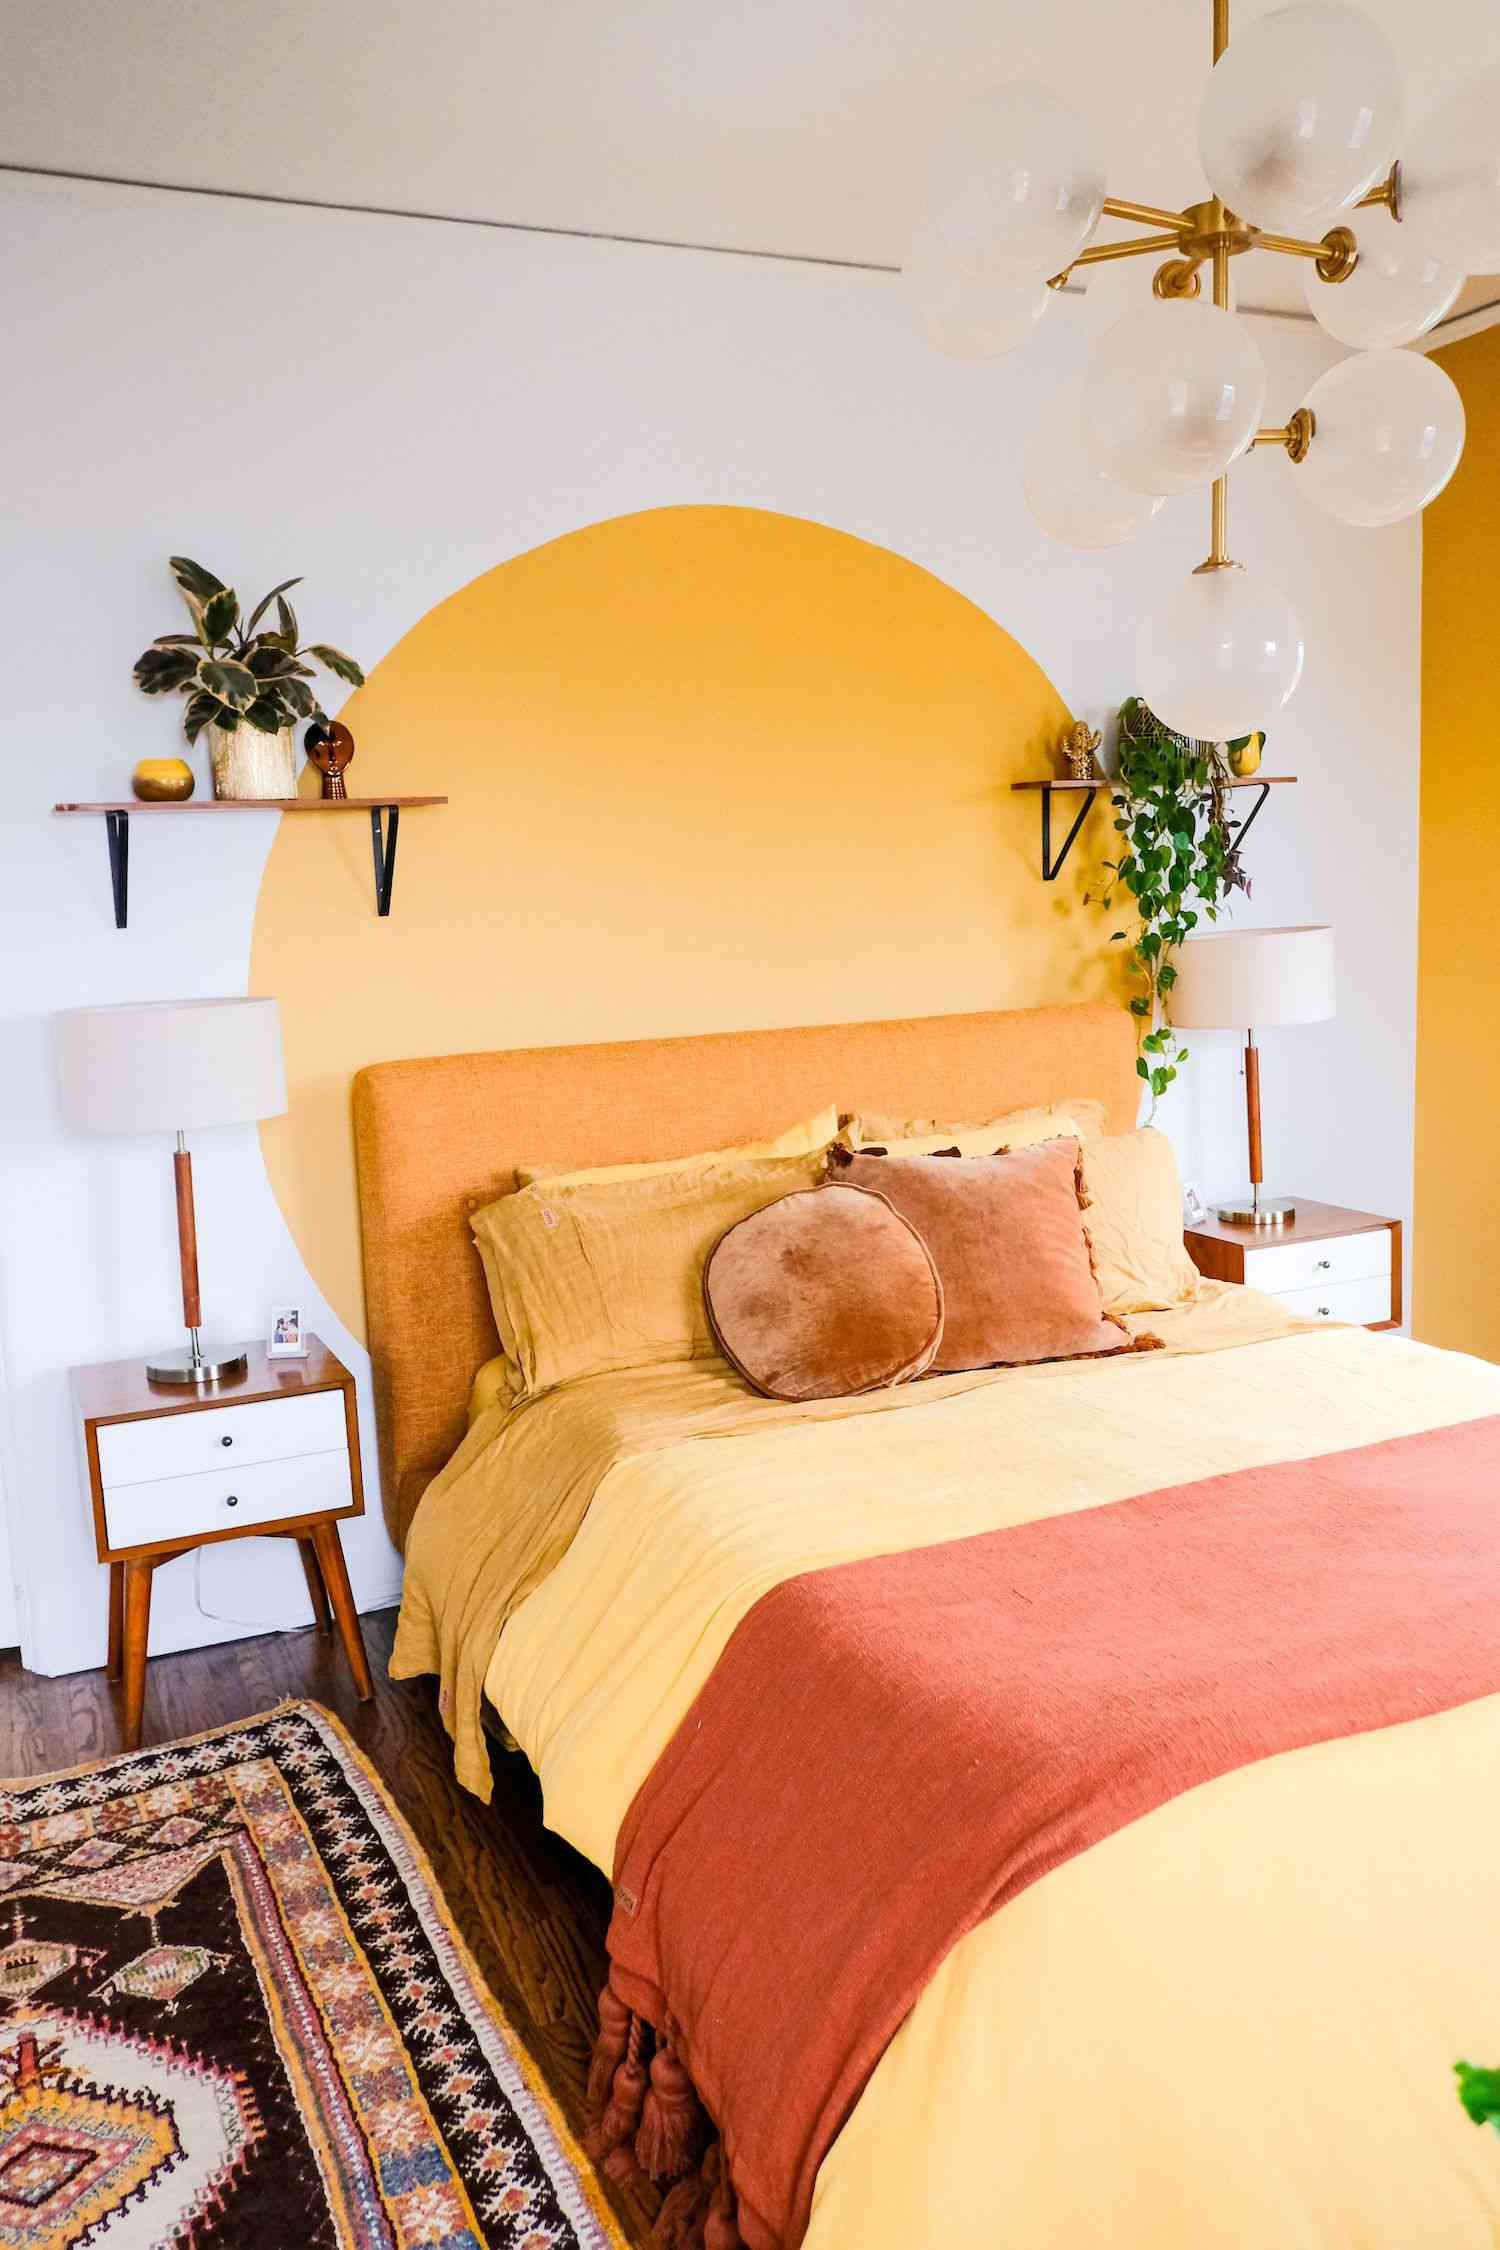 dormitorio con mural de círculos amarillos sobre pared blanca, sábanas amarillas, estantería flotante con plantas